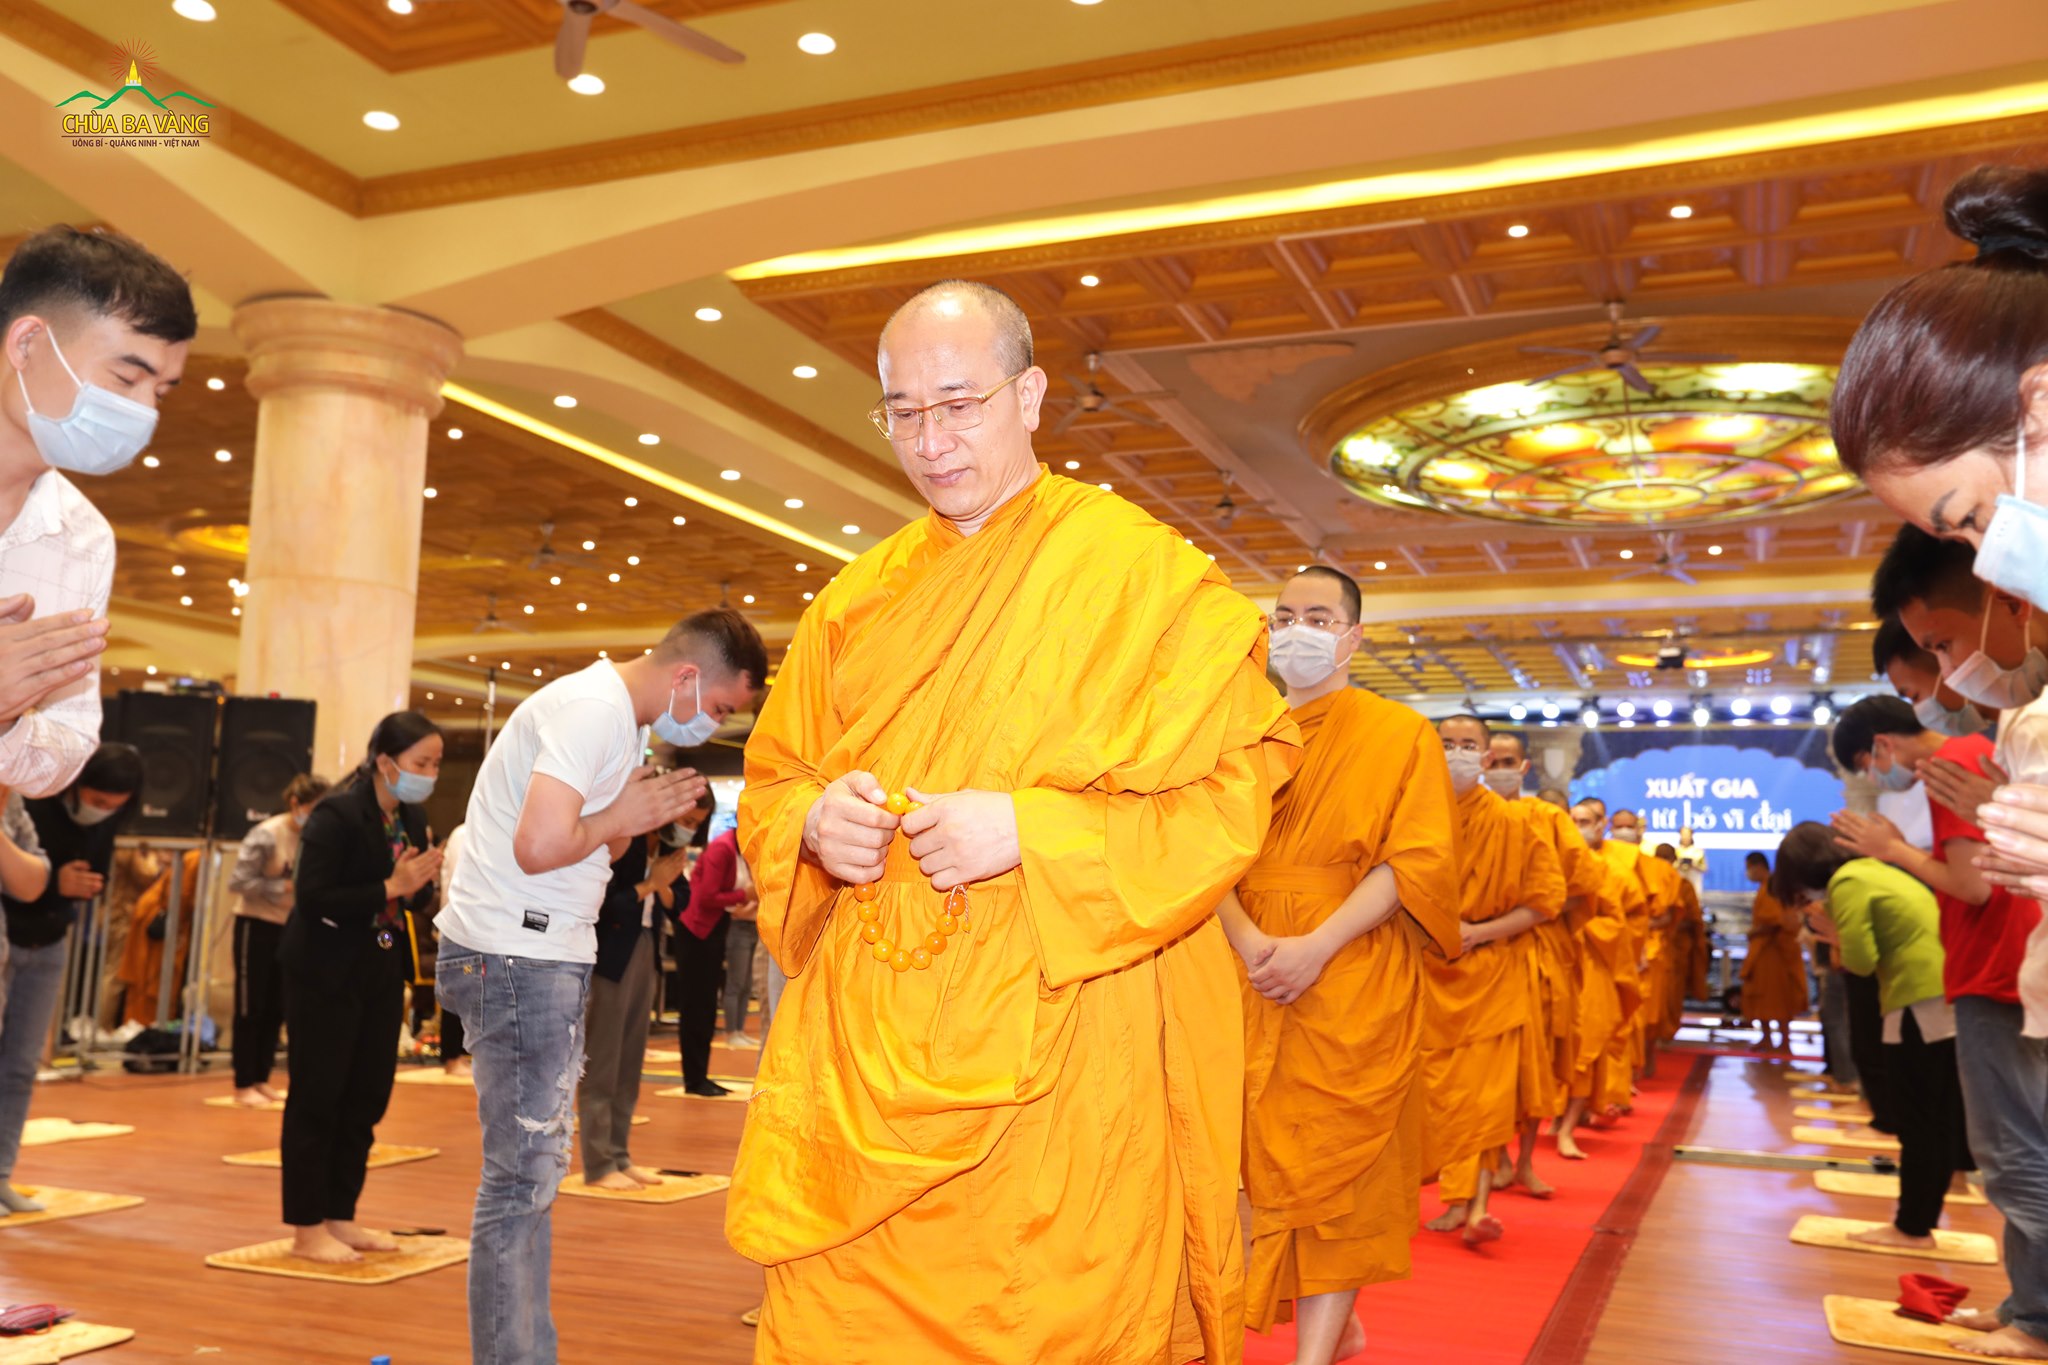   Phật tử cung kính cung đón Sư Phụ cùng chư Tăng chứng minh và tham dự chương trình  